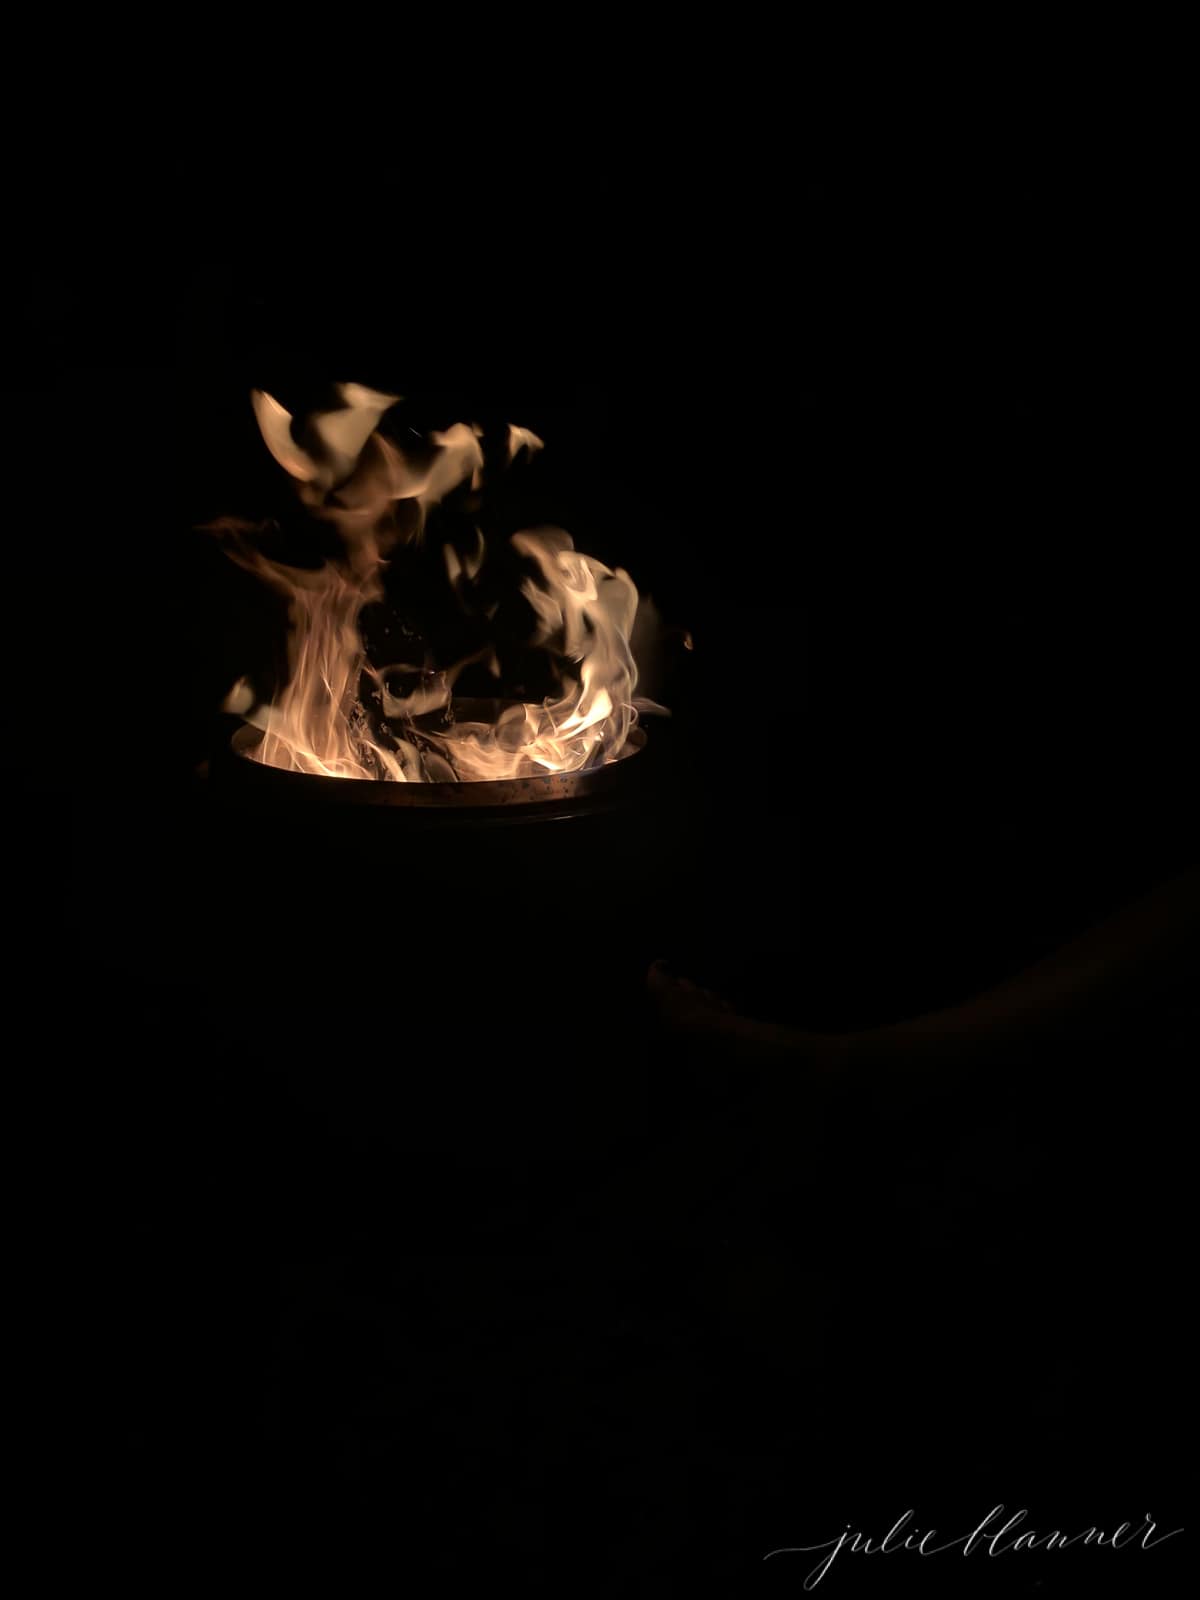 火从单独的炉子里燃烧出来